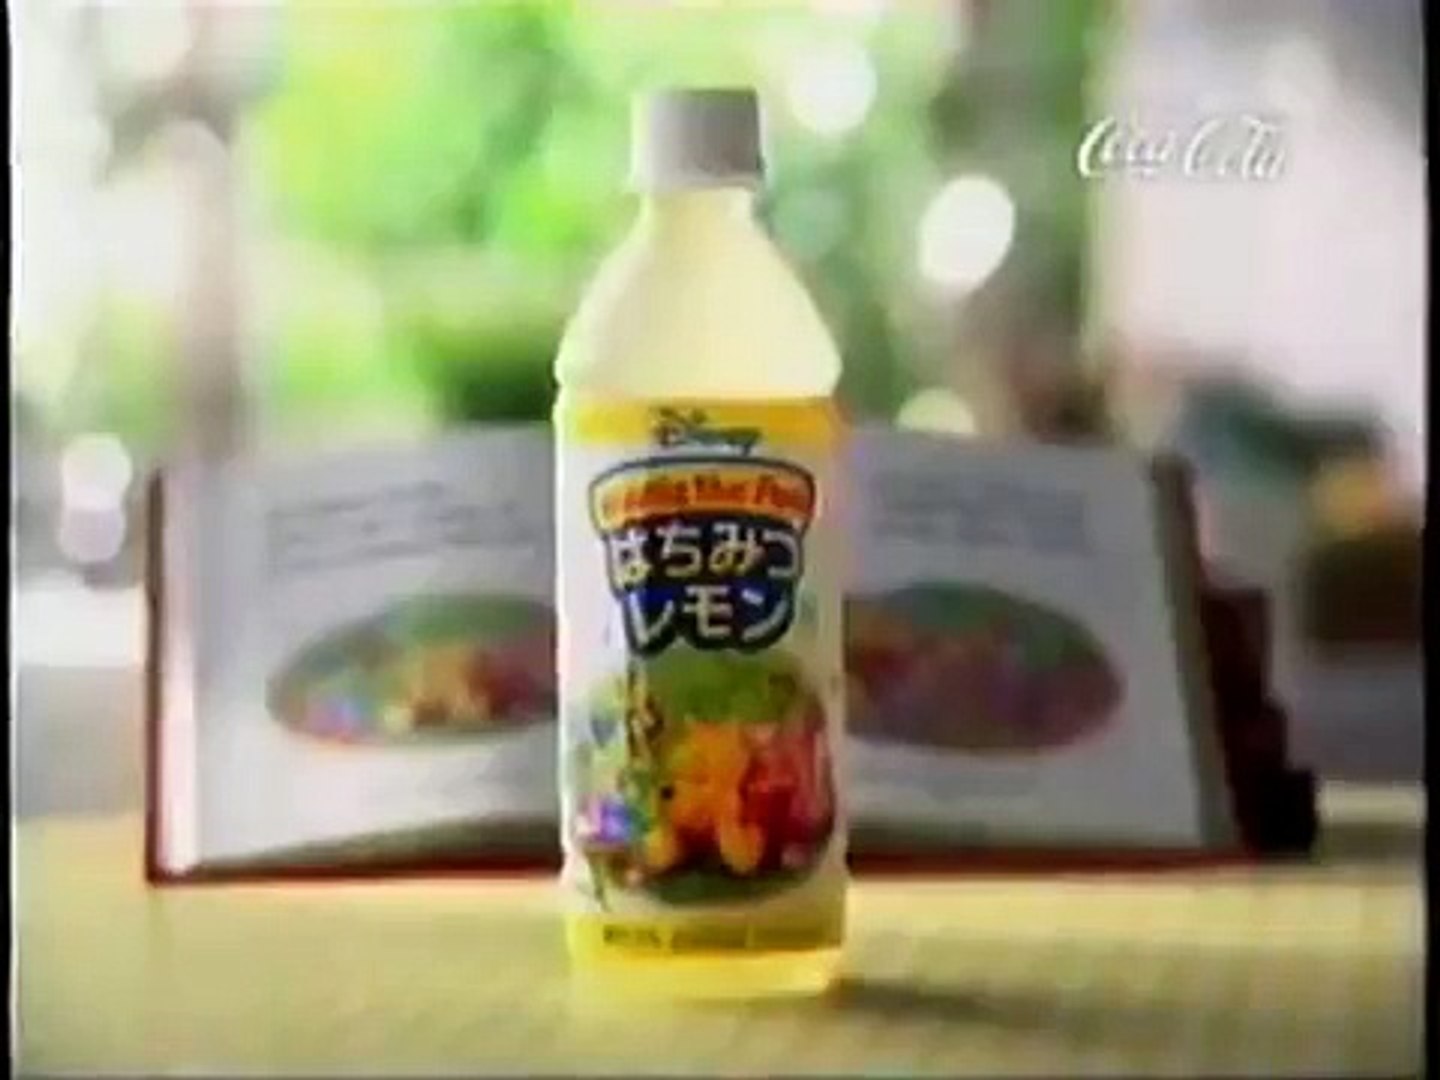 Cm 日本コカ コーラ はちみつレモン クマのプーさん 02年 Video Dailymotion